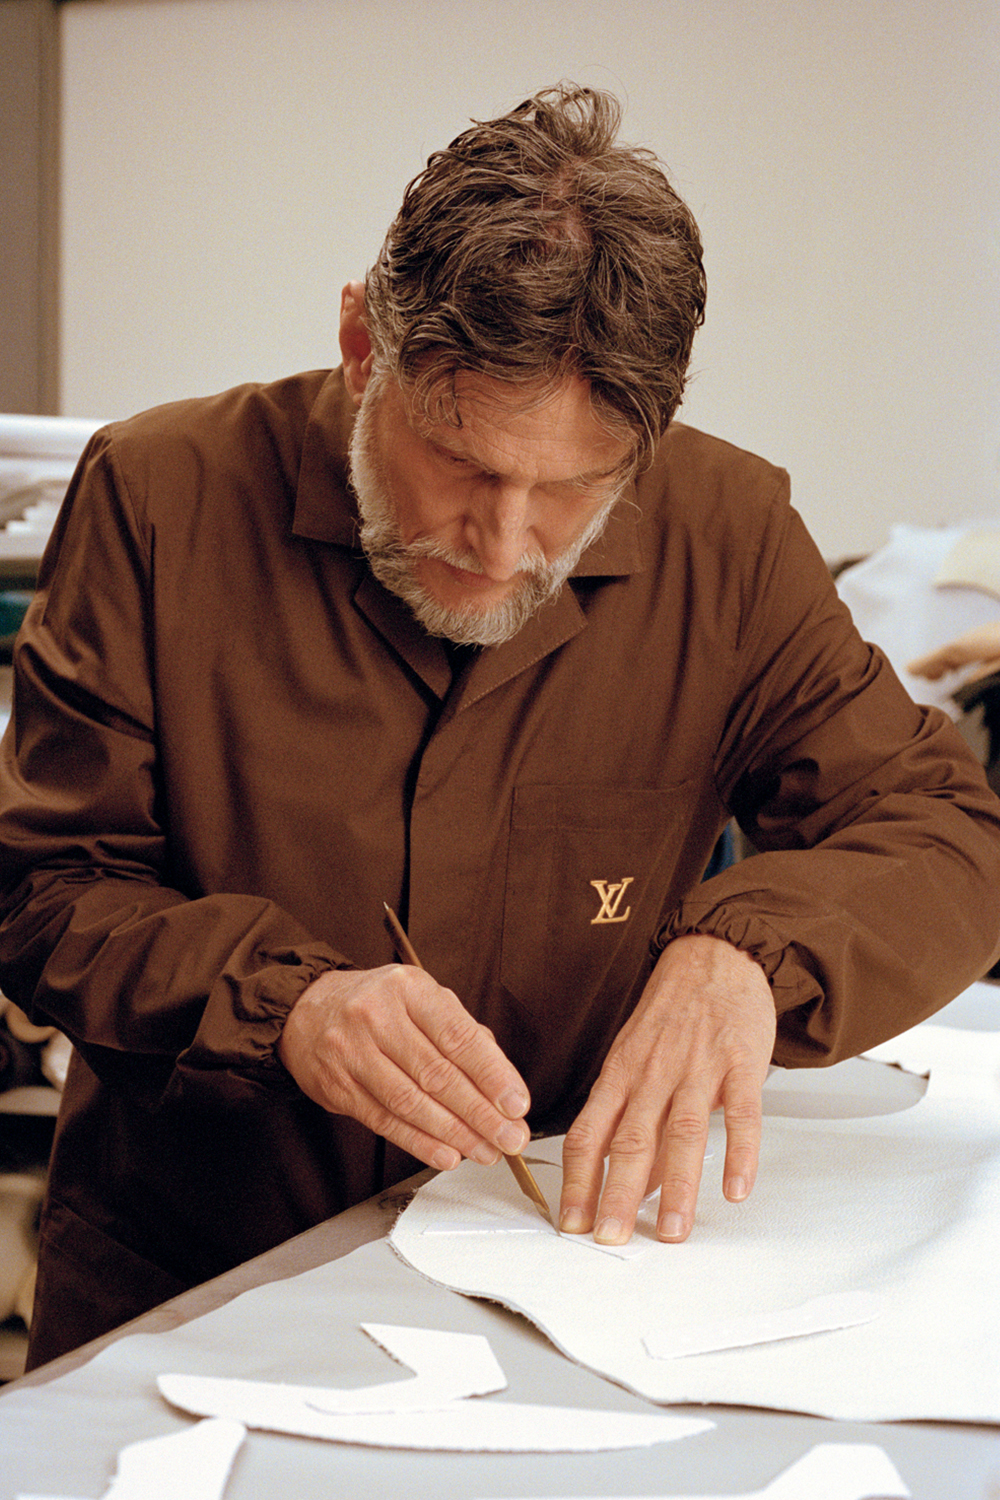 Louis Vuitton Taps Artists to Revisit Virgil Abloh's LV Trainer